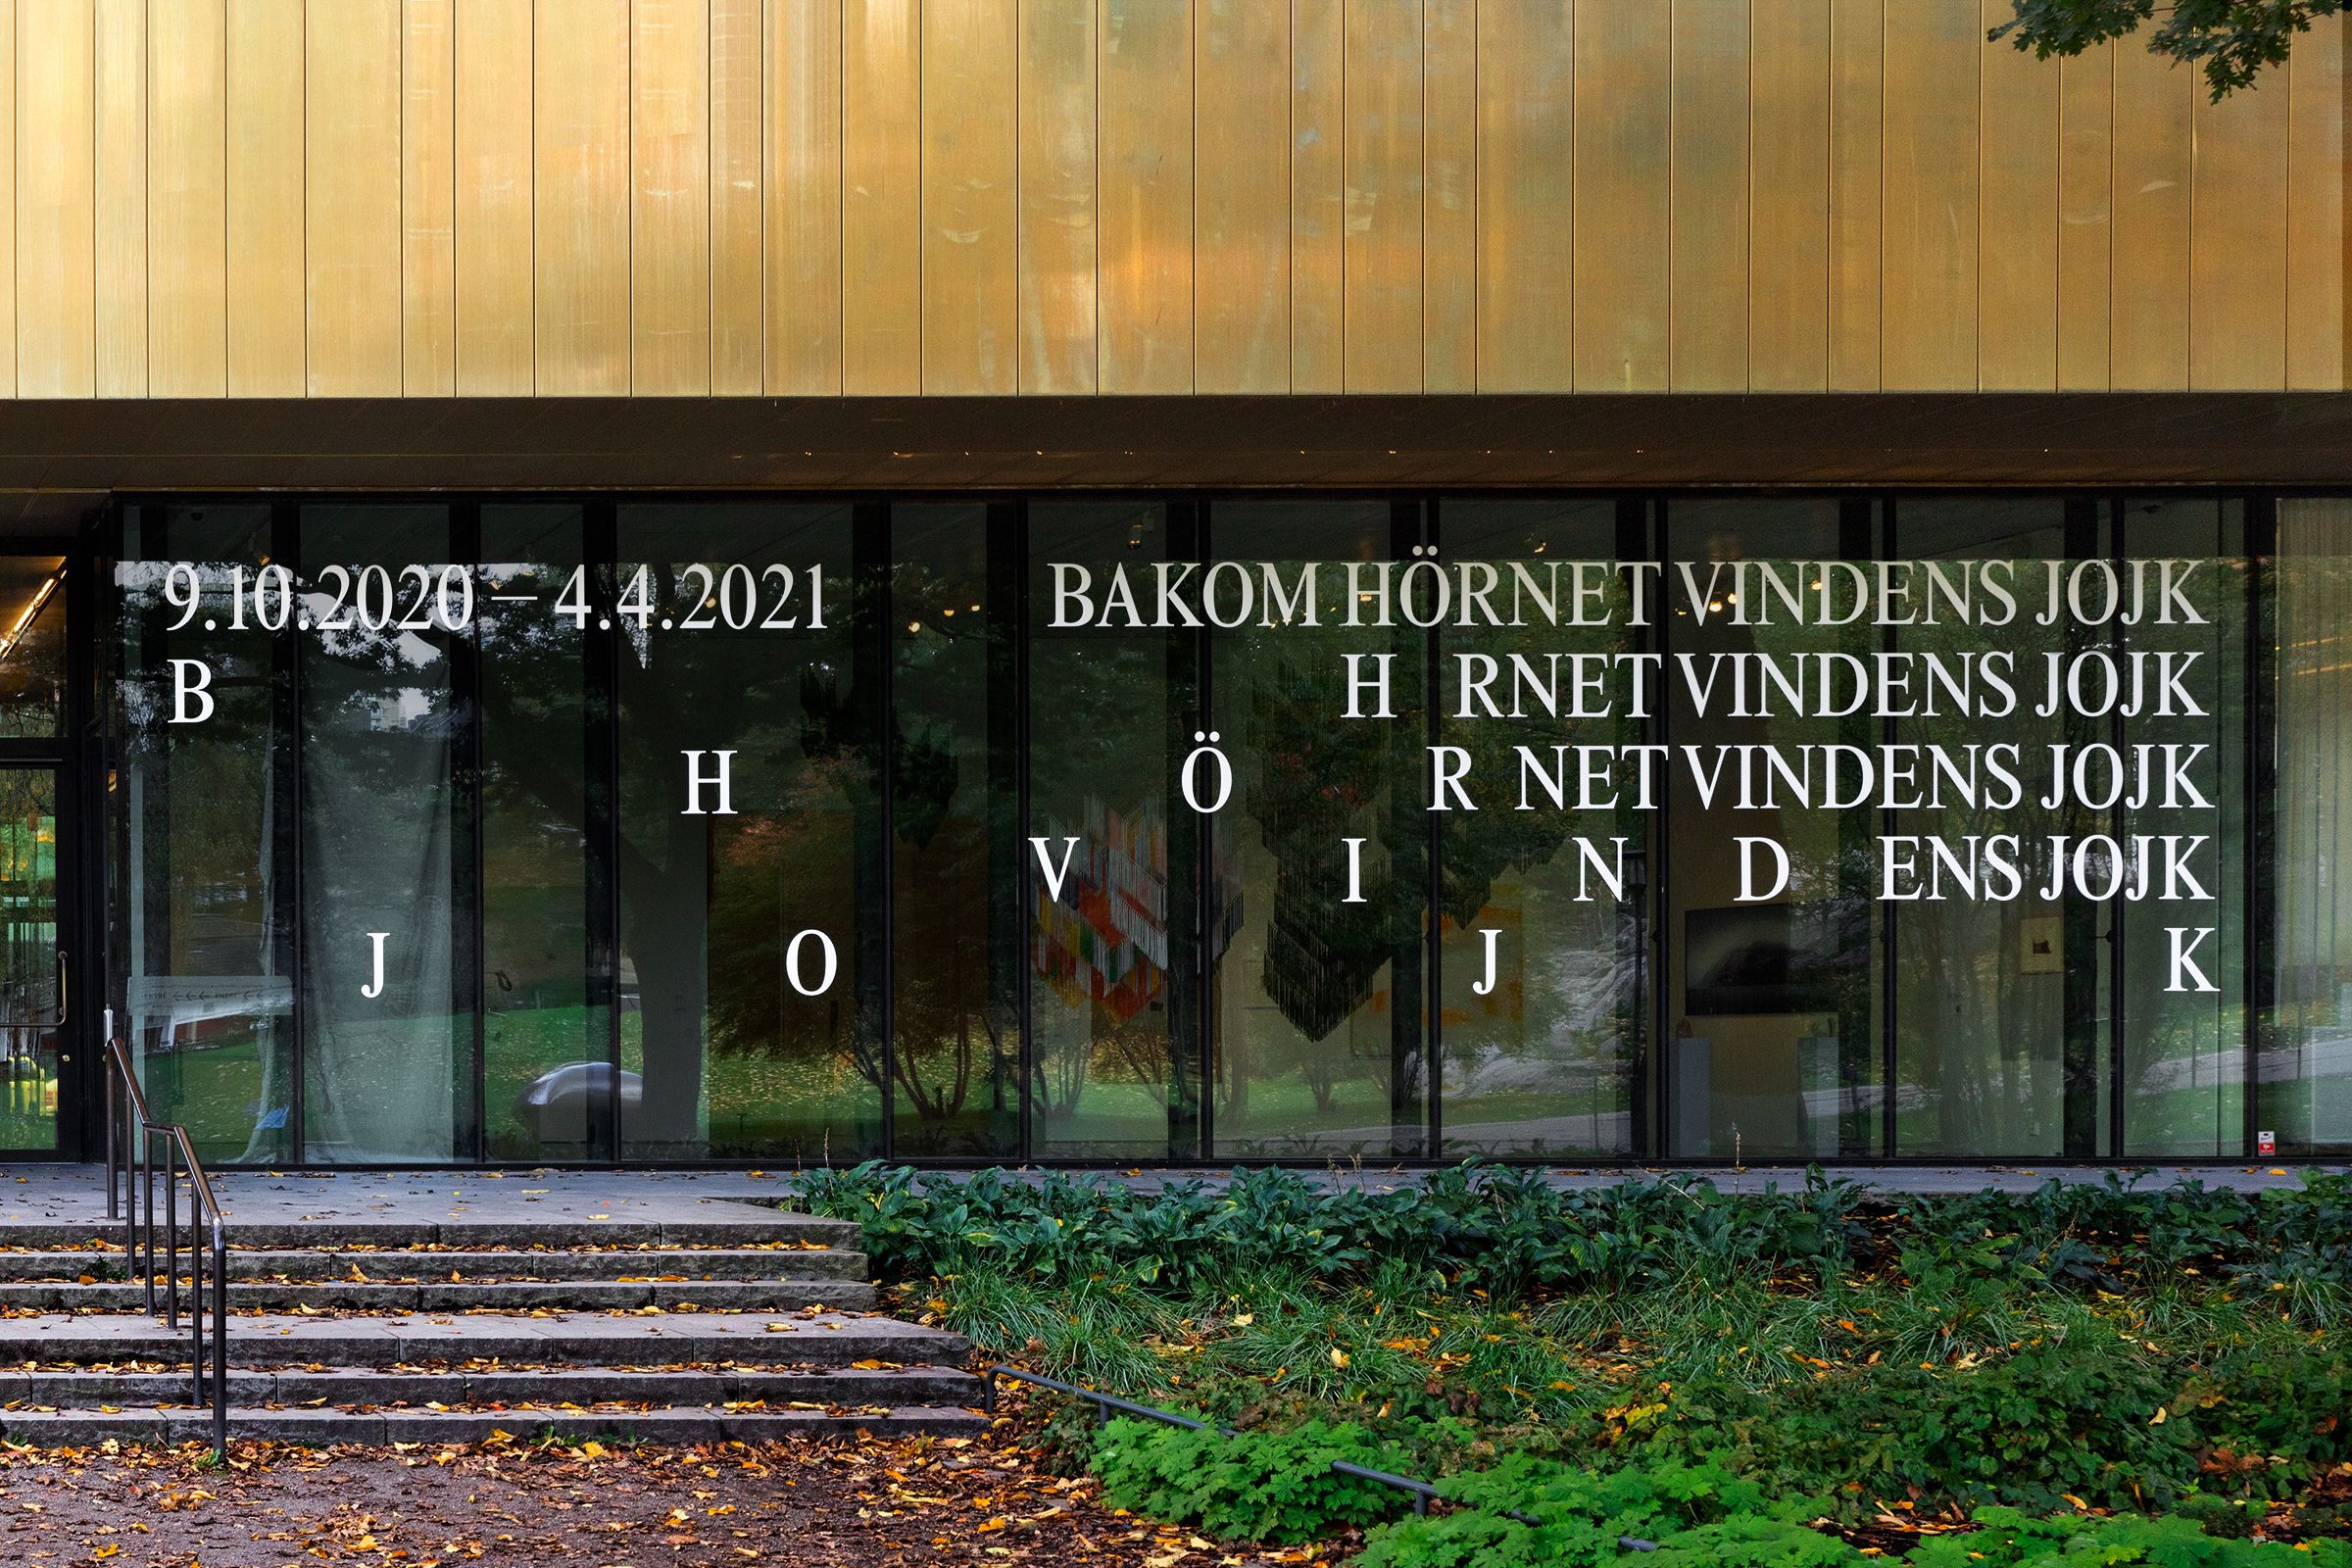 Bakom Hörnet Vindens Jojk exhibition at Sven-Harry Konstmuseum